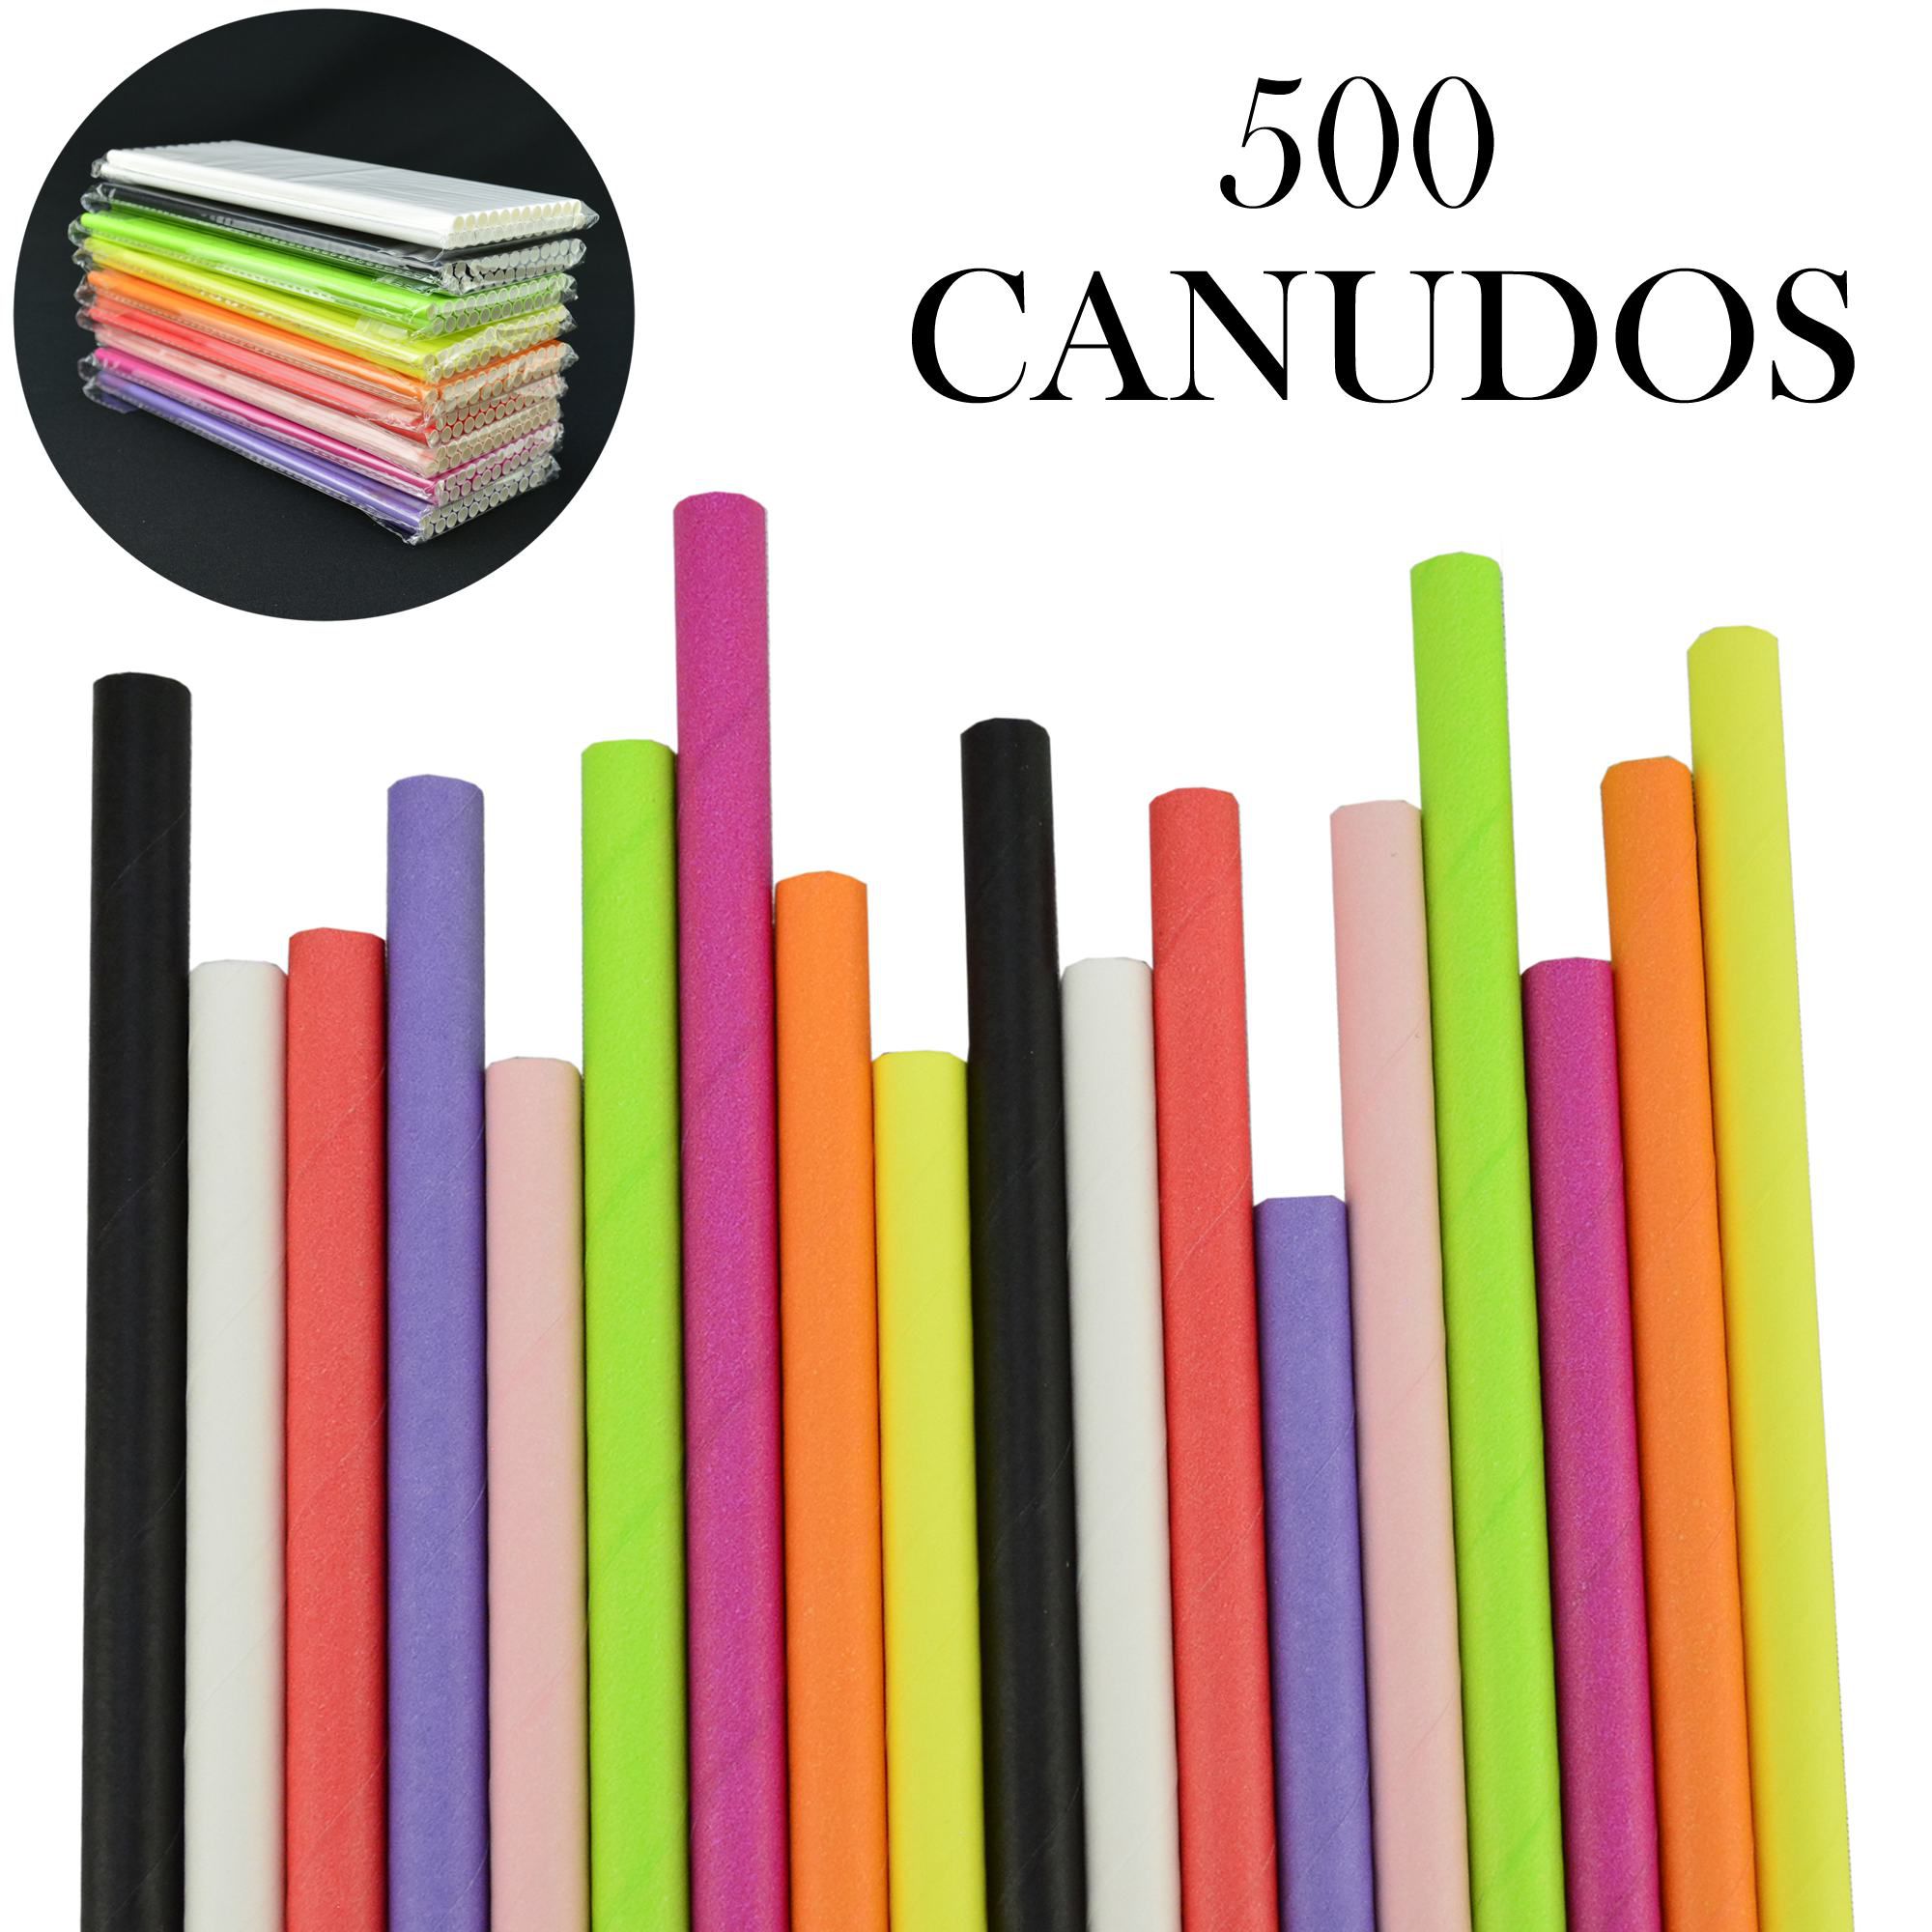 Canudos de Papel Biodegradável Coloridos 500 Unidades CBRN10844